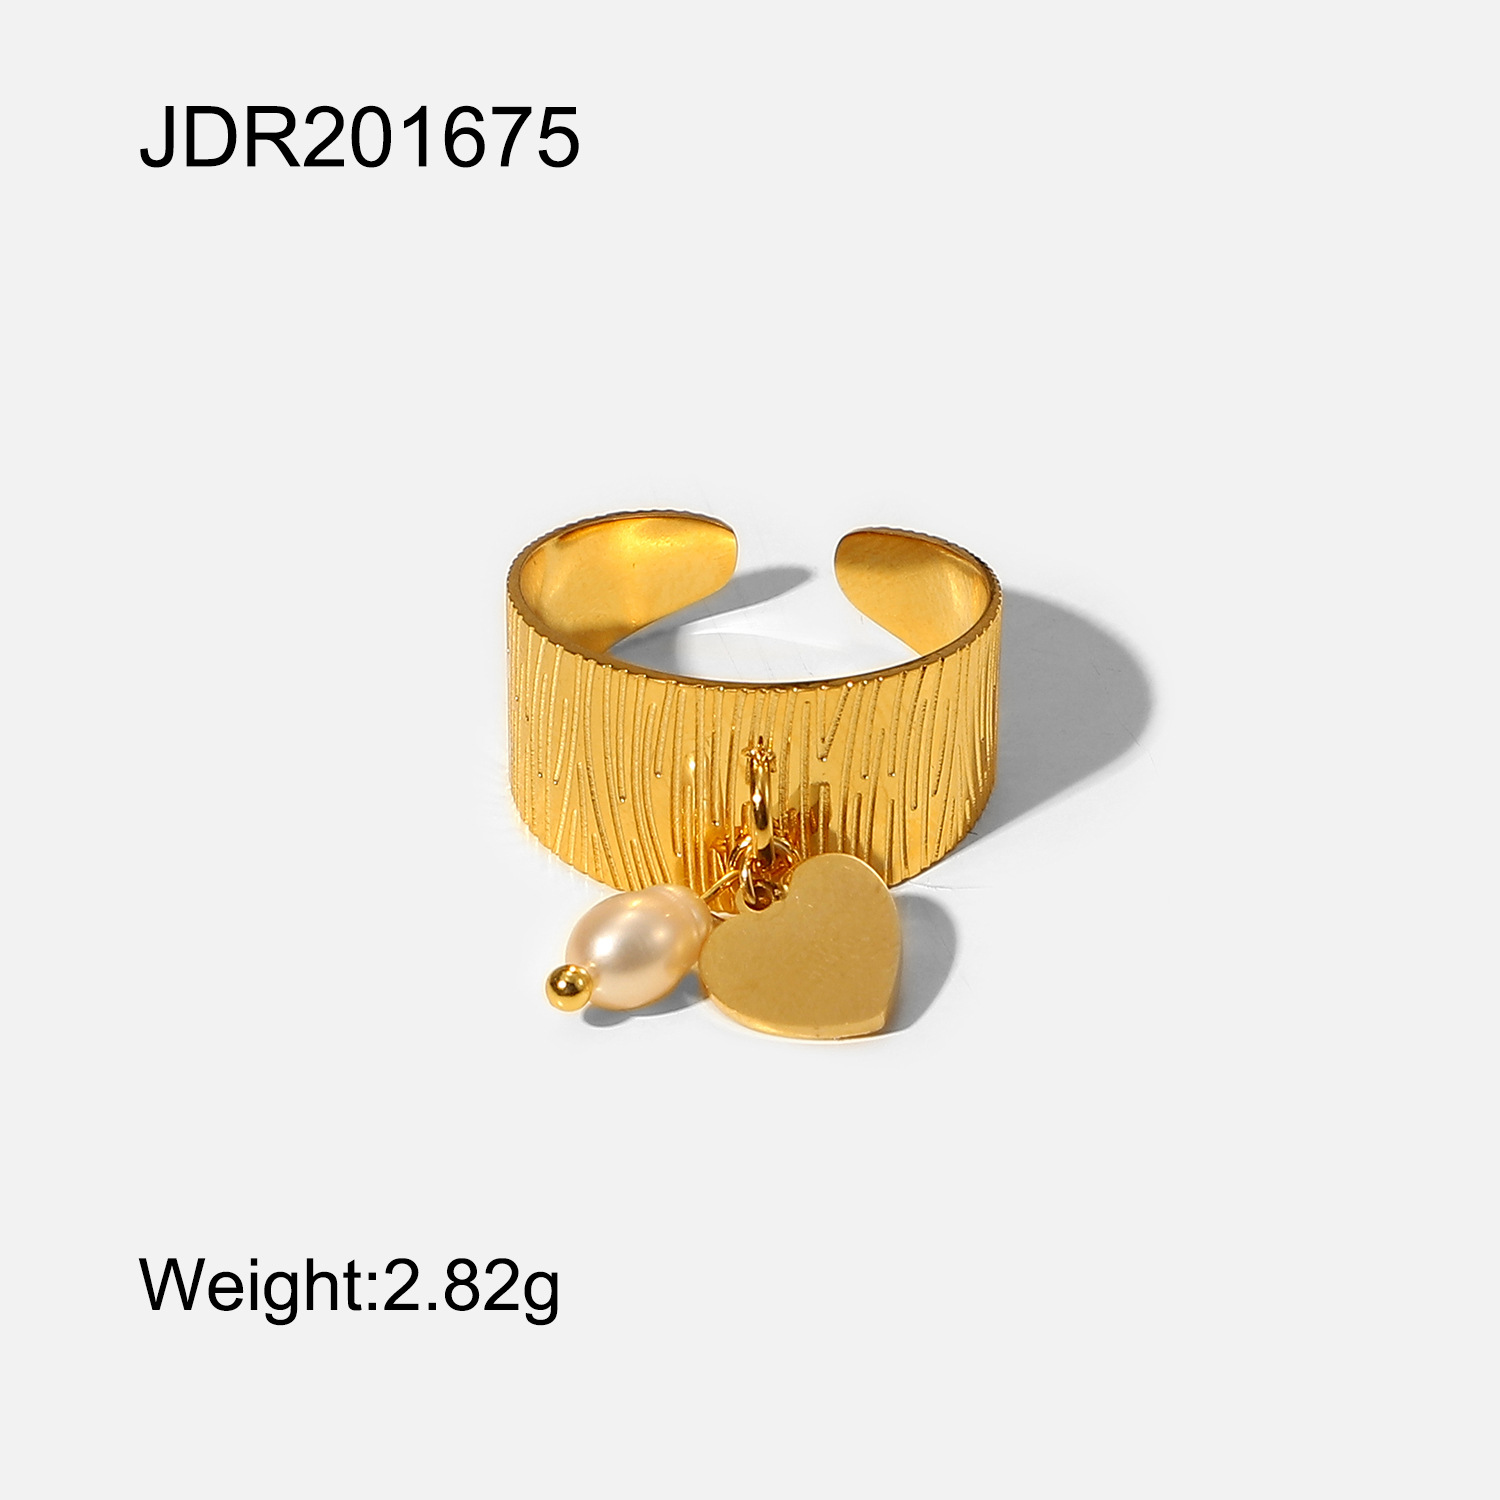 JDR201675